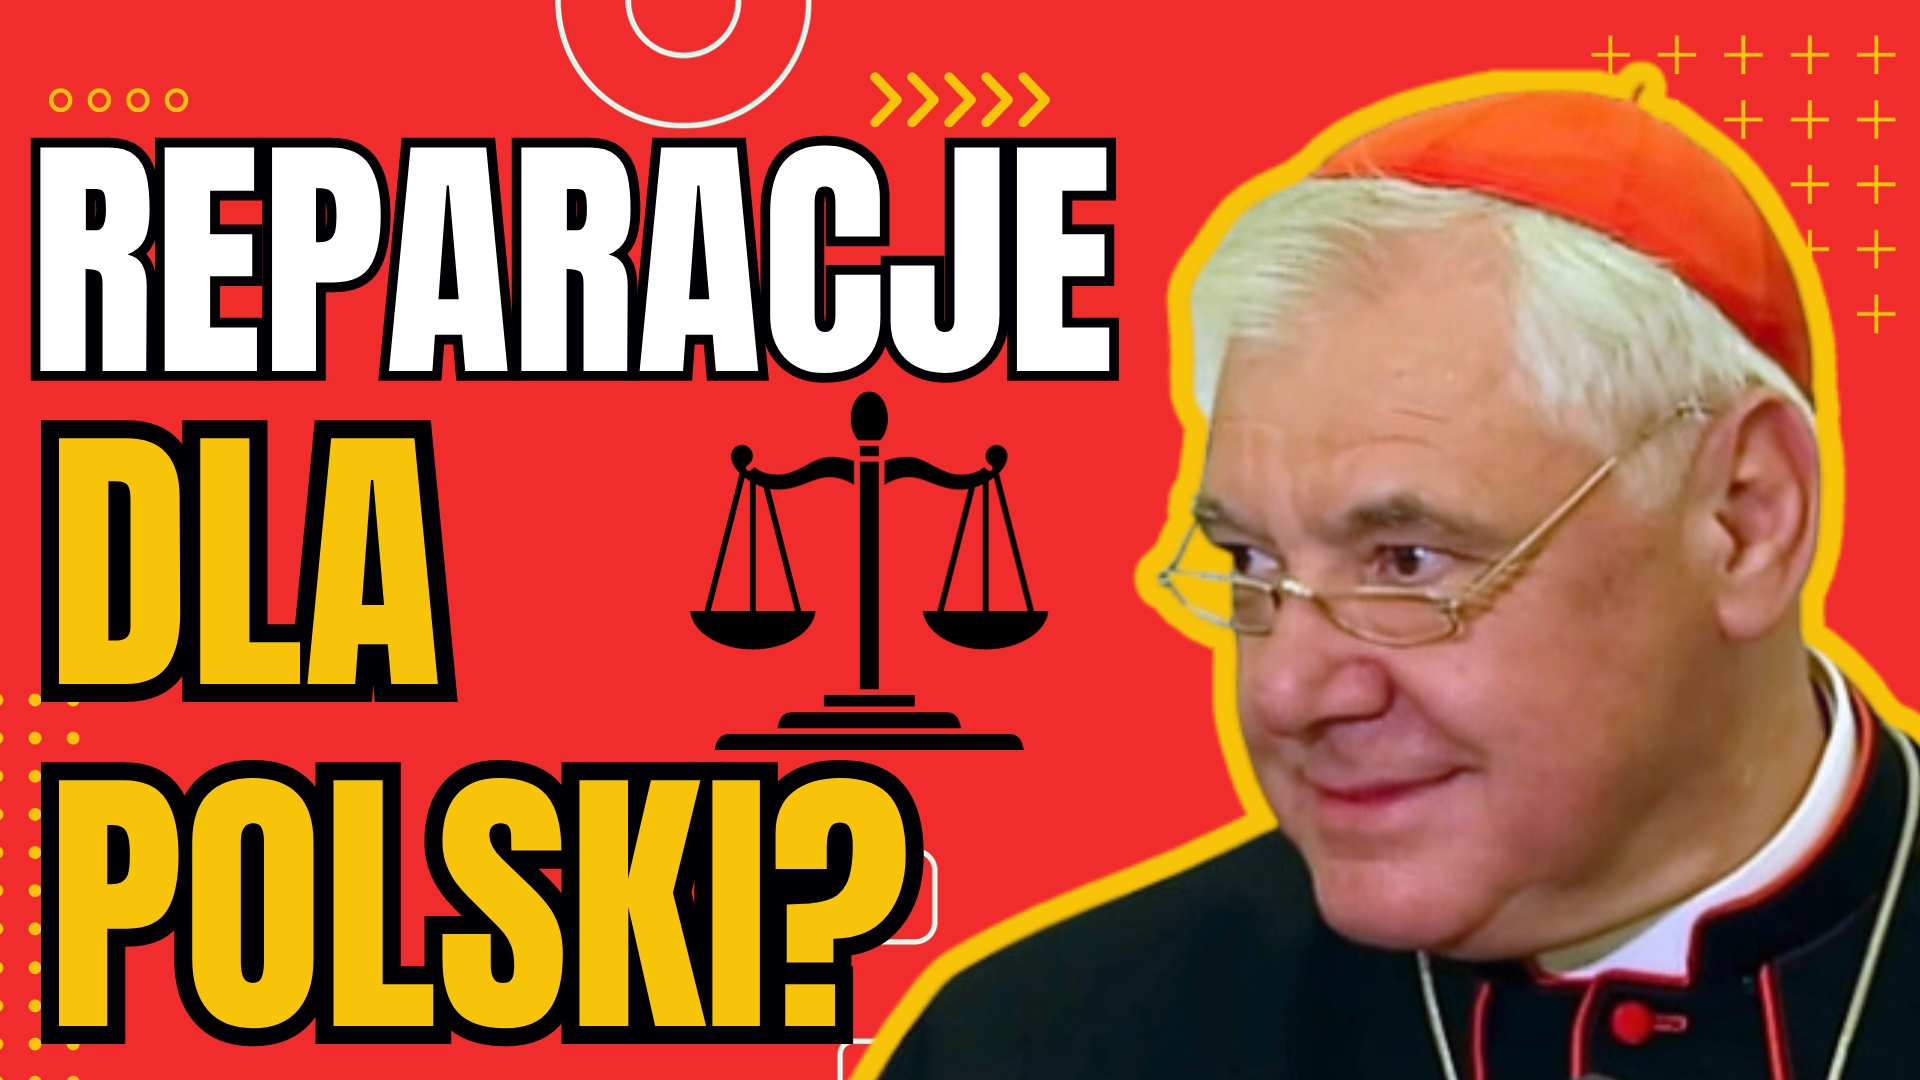 SKANDAL! Co powiedział kardynał Müller na temat reparacji dla Polski? Bogumił Szojda